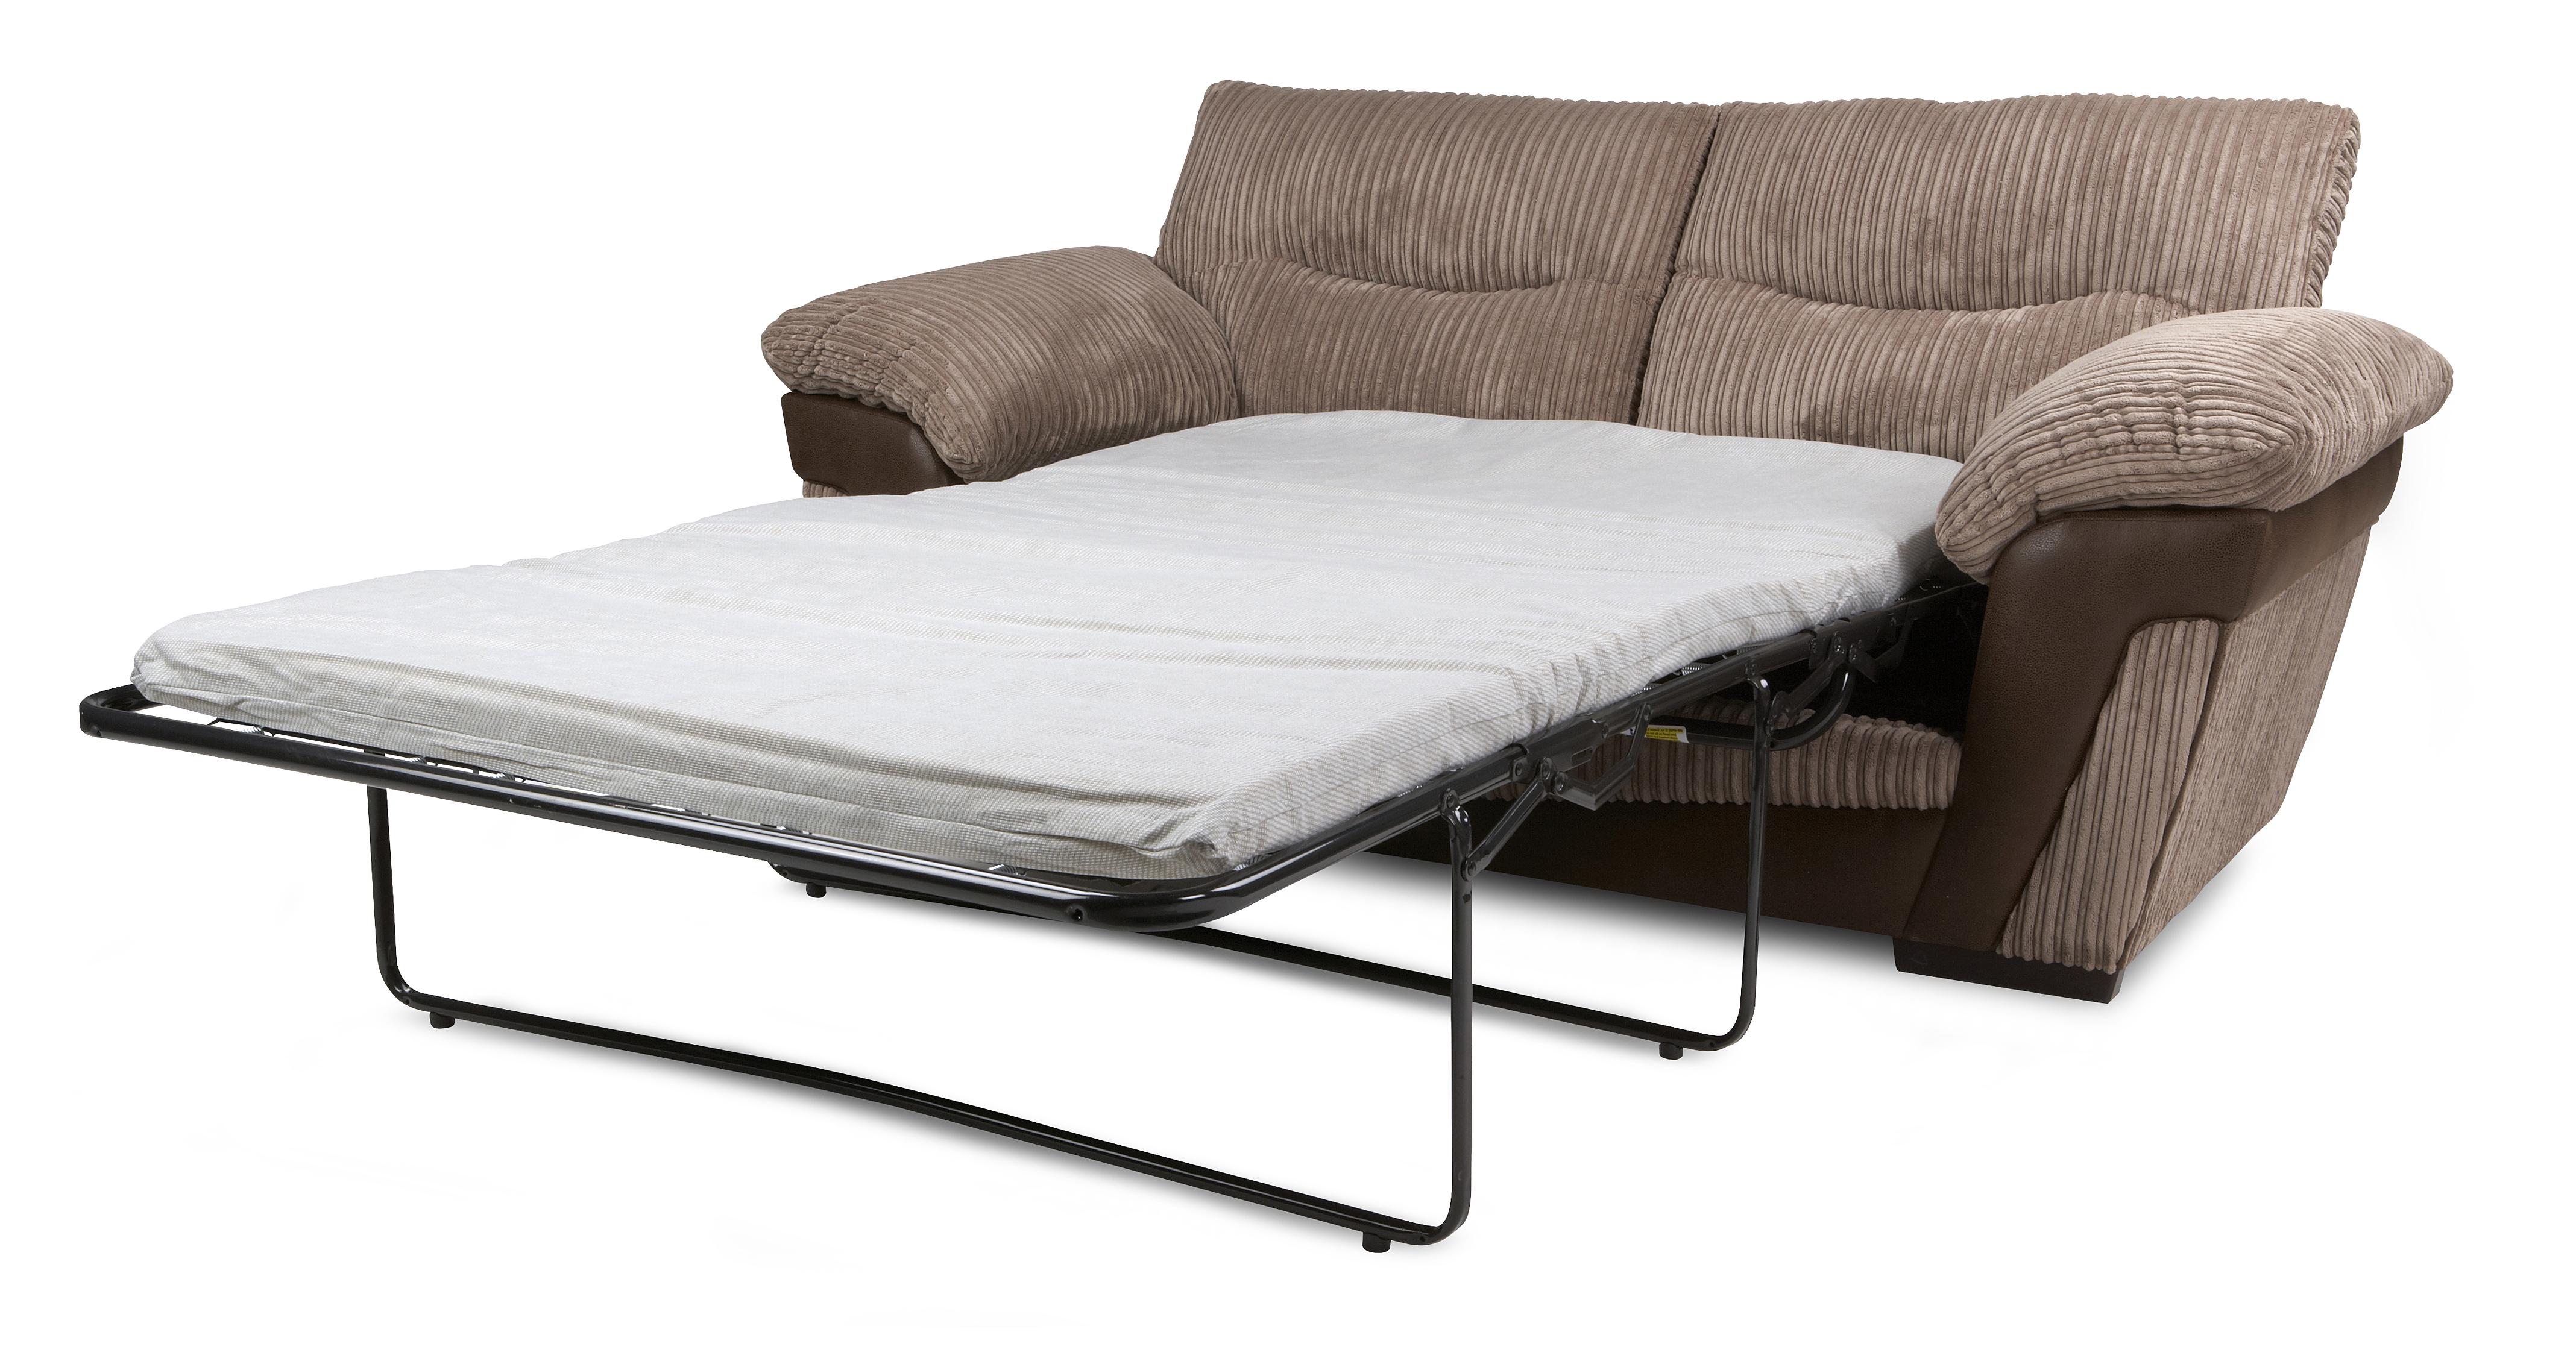 ebay uk used sofa beds